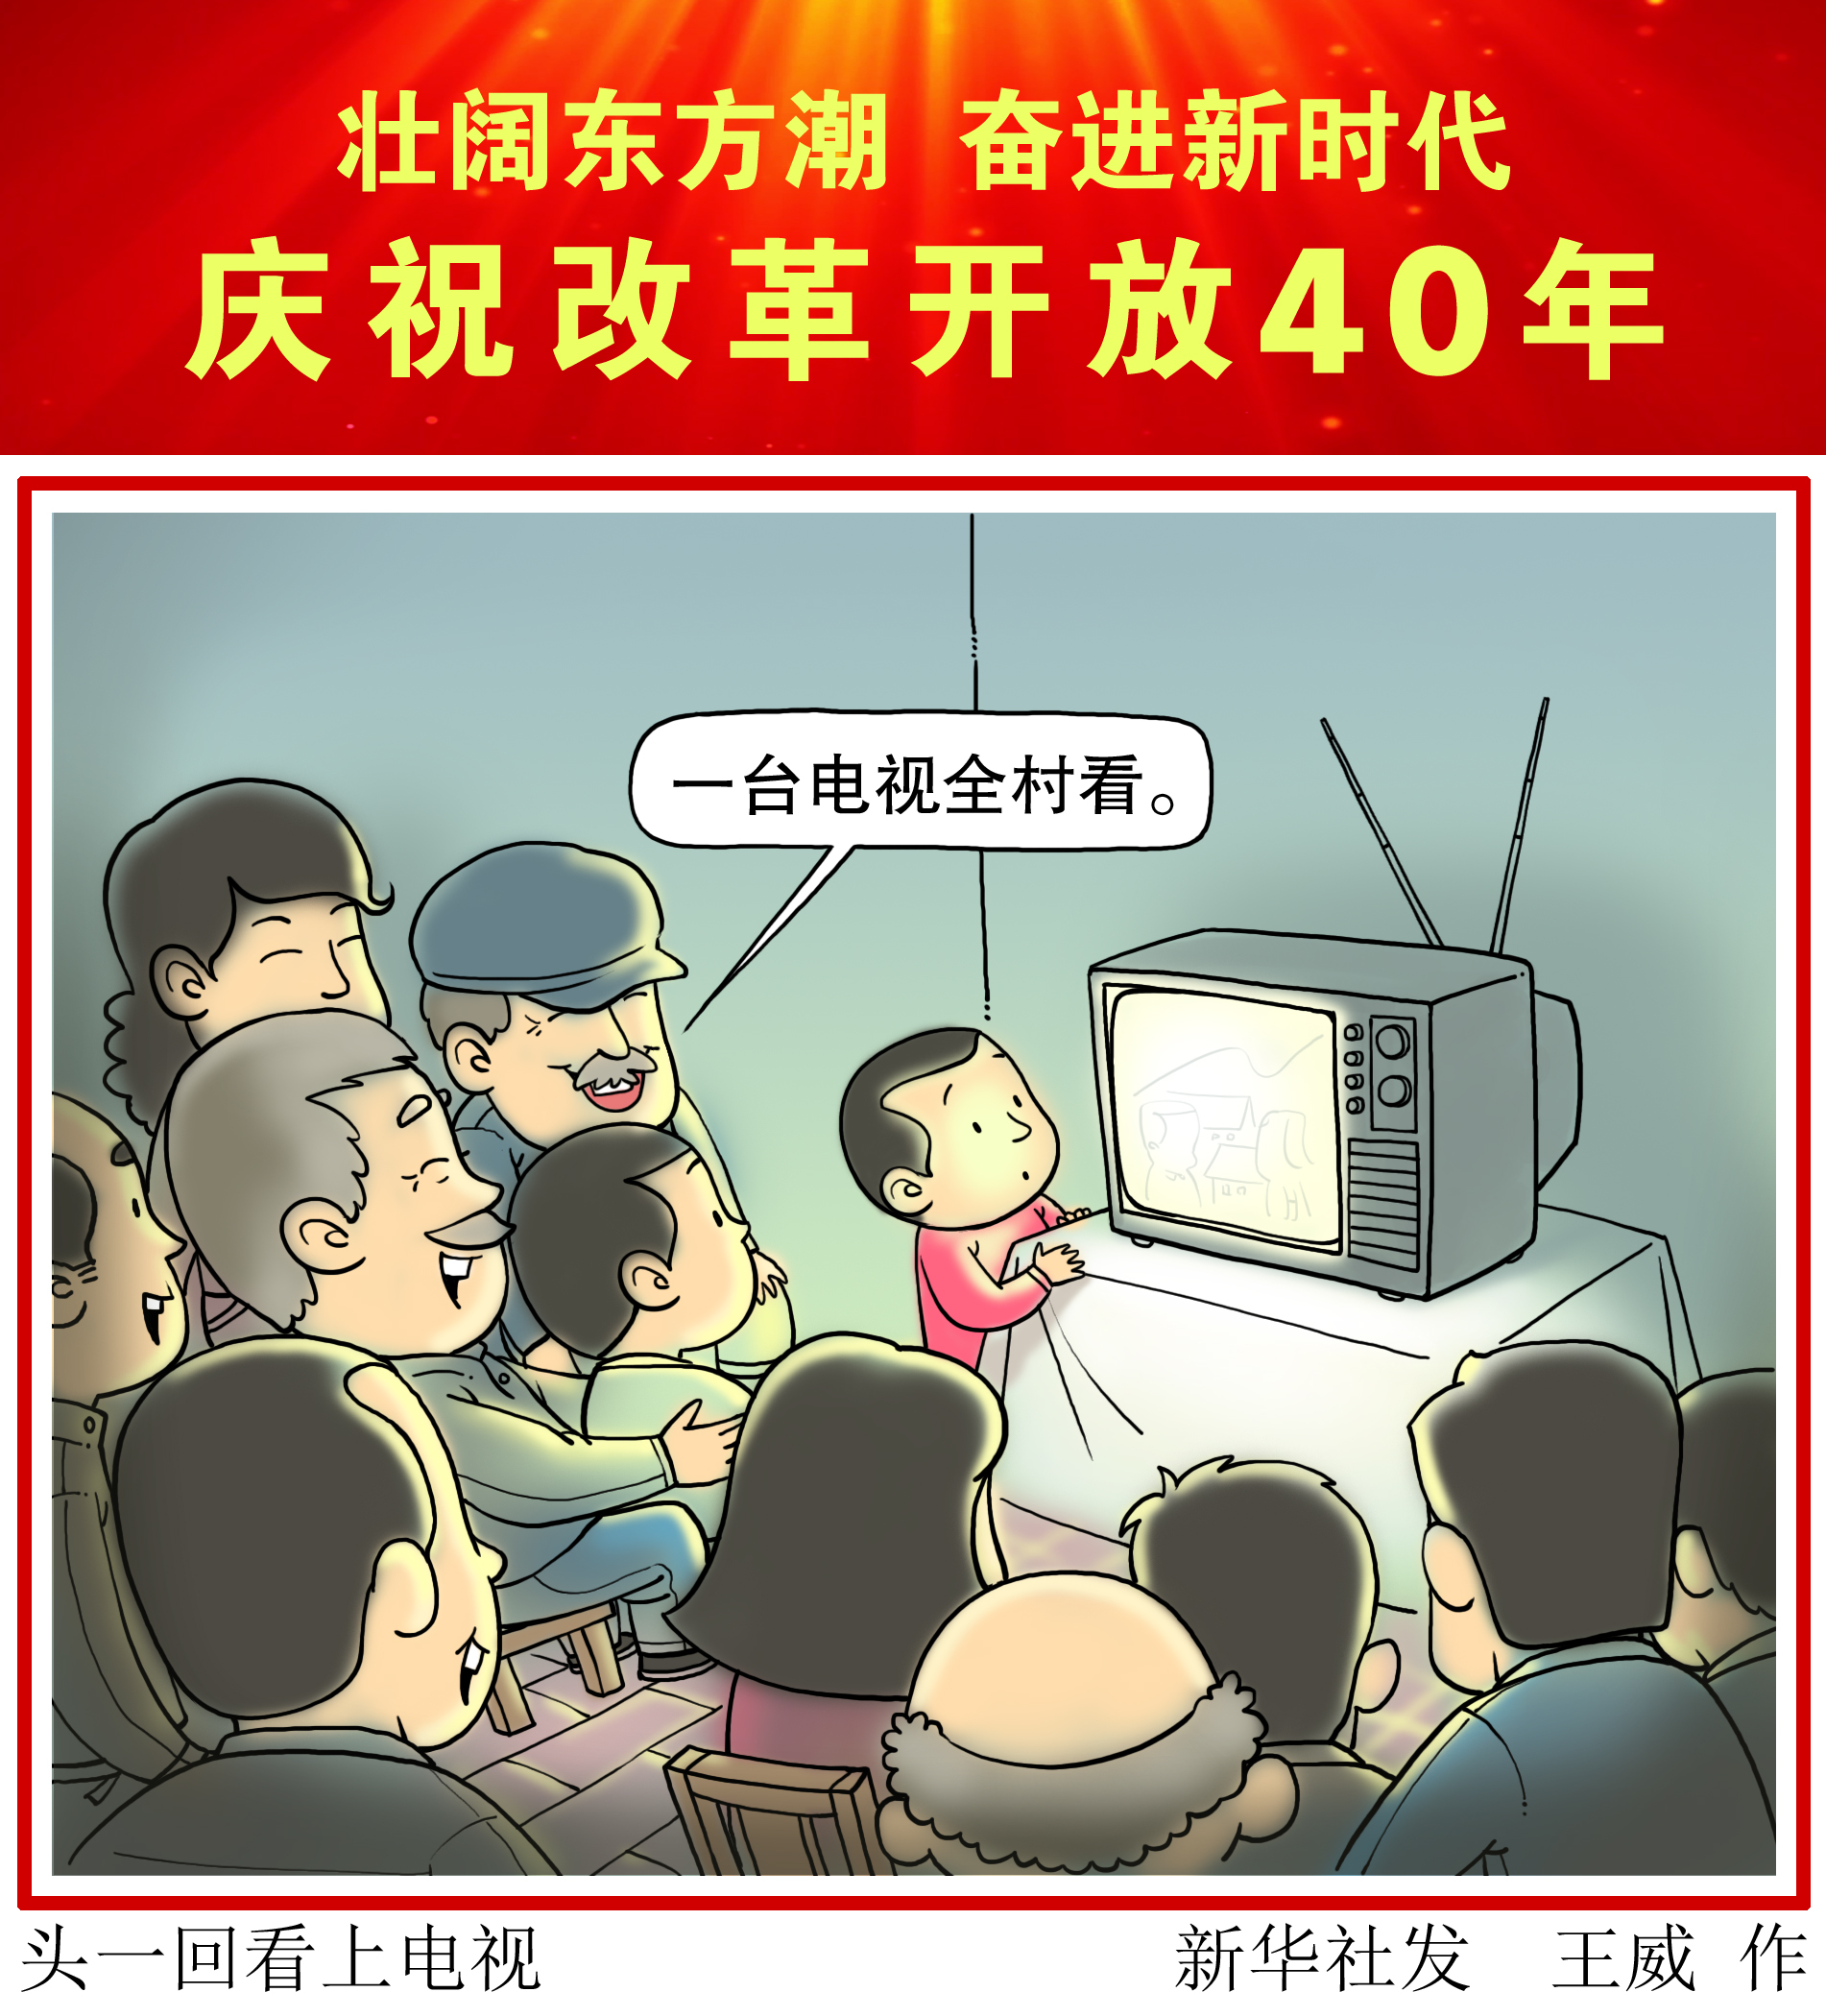 (图表·漫画)[壮阔东方潮 奋进新时代——庆祝改革开放40年]头一回看